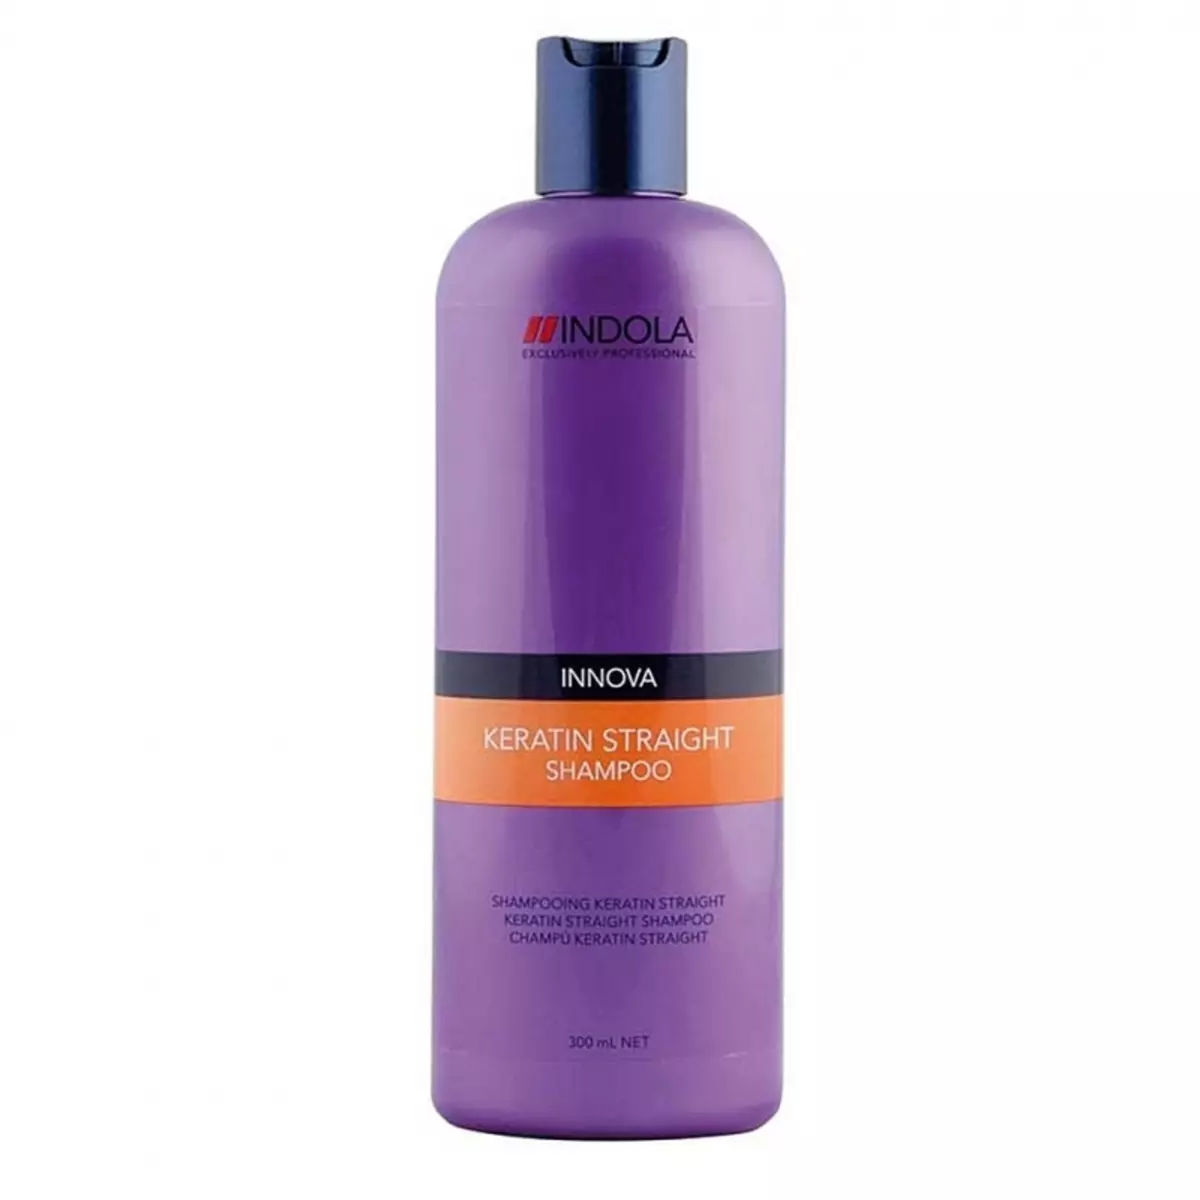 Shampoo raddrizzamento dei capelli: Revisione degli shampoo leviganti professionali per capelli arrampicati 6069_12